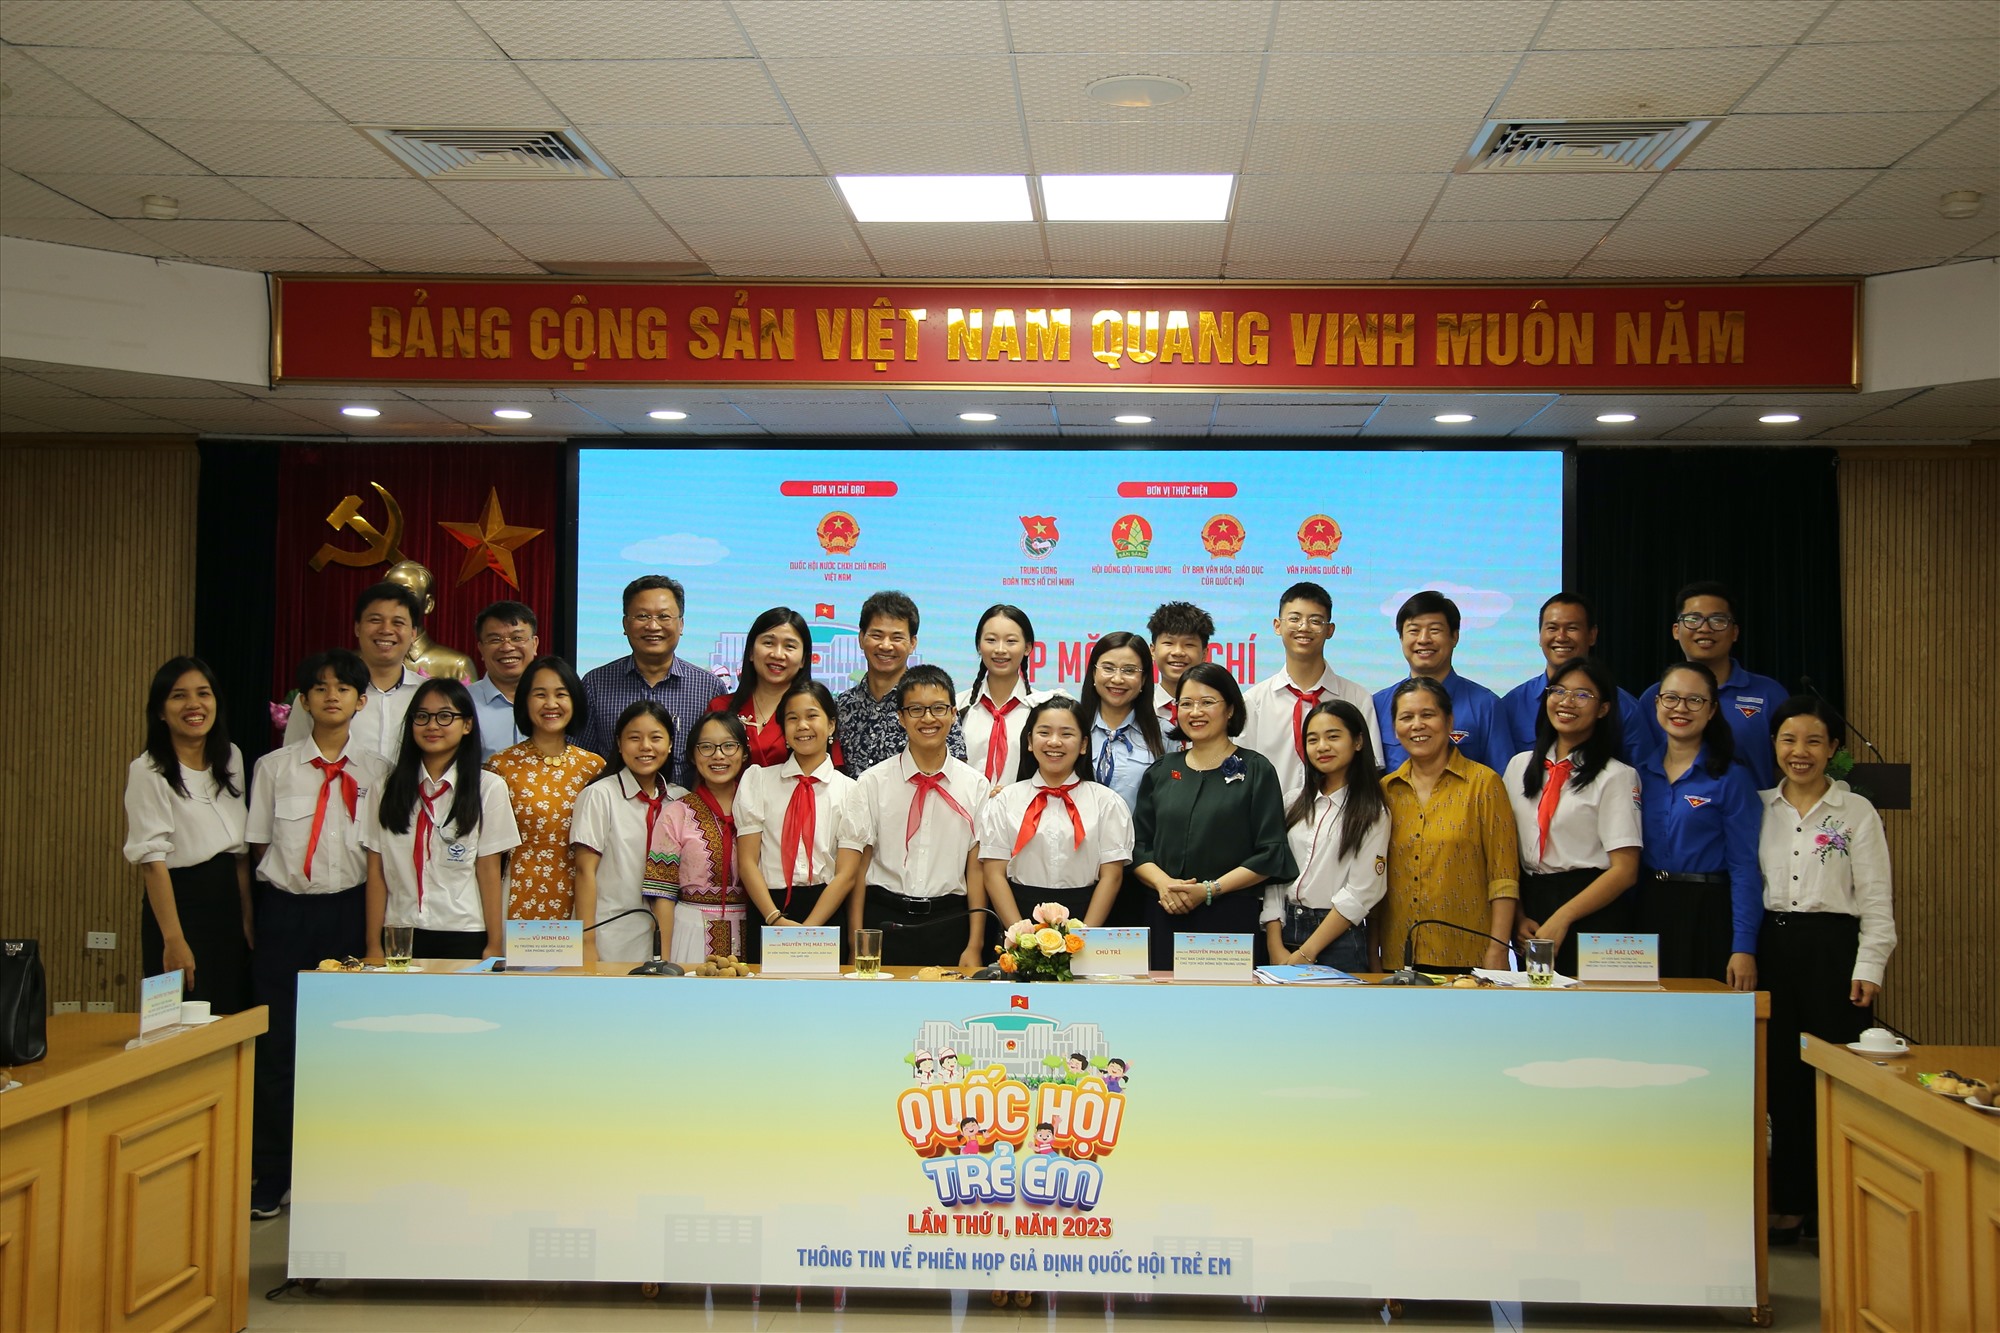 Phiên họp giả định “Quốc hội trẻ em” sẽ được diễn ra từ 9-10.9 tại Hà Nội. Ảnh: Ái Vân